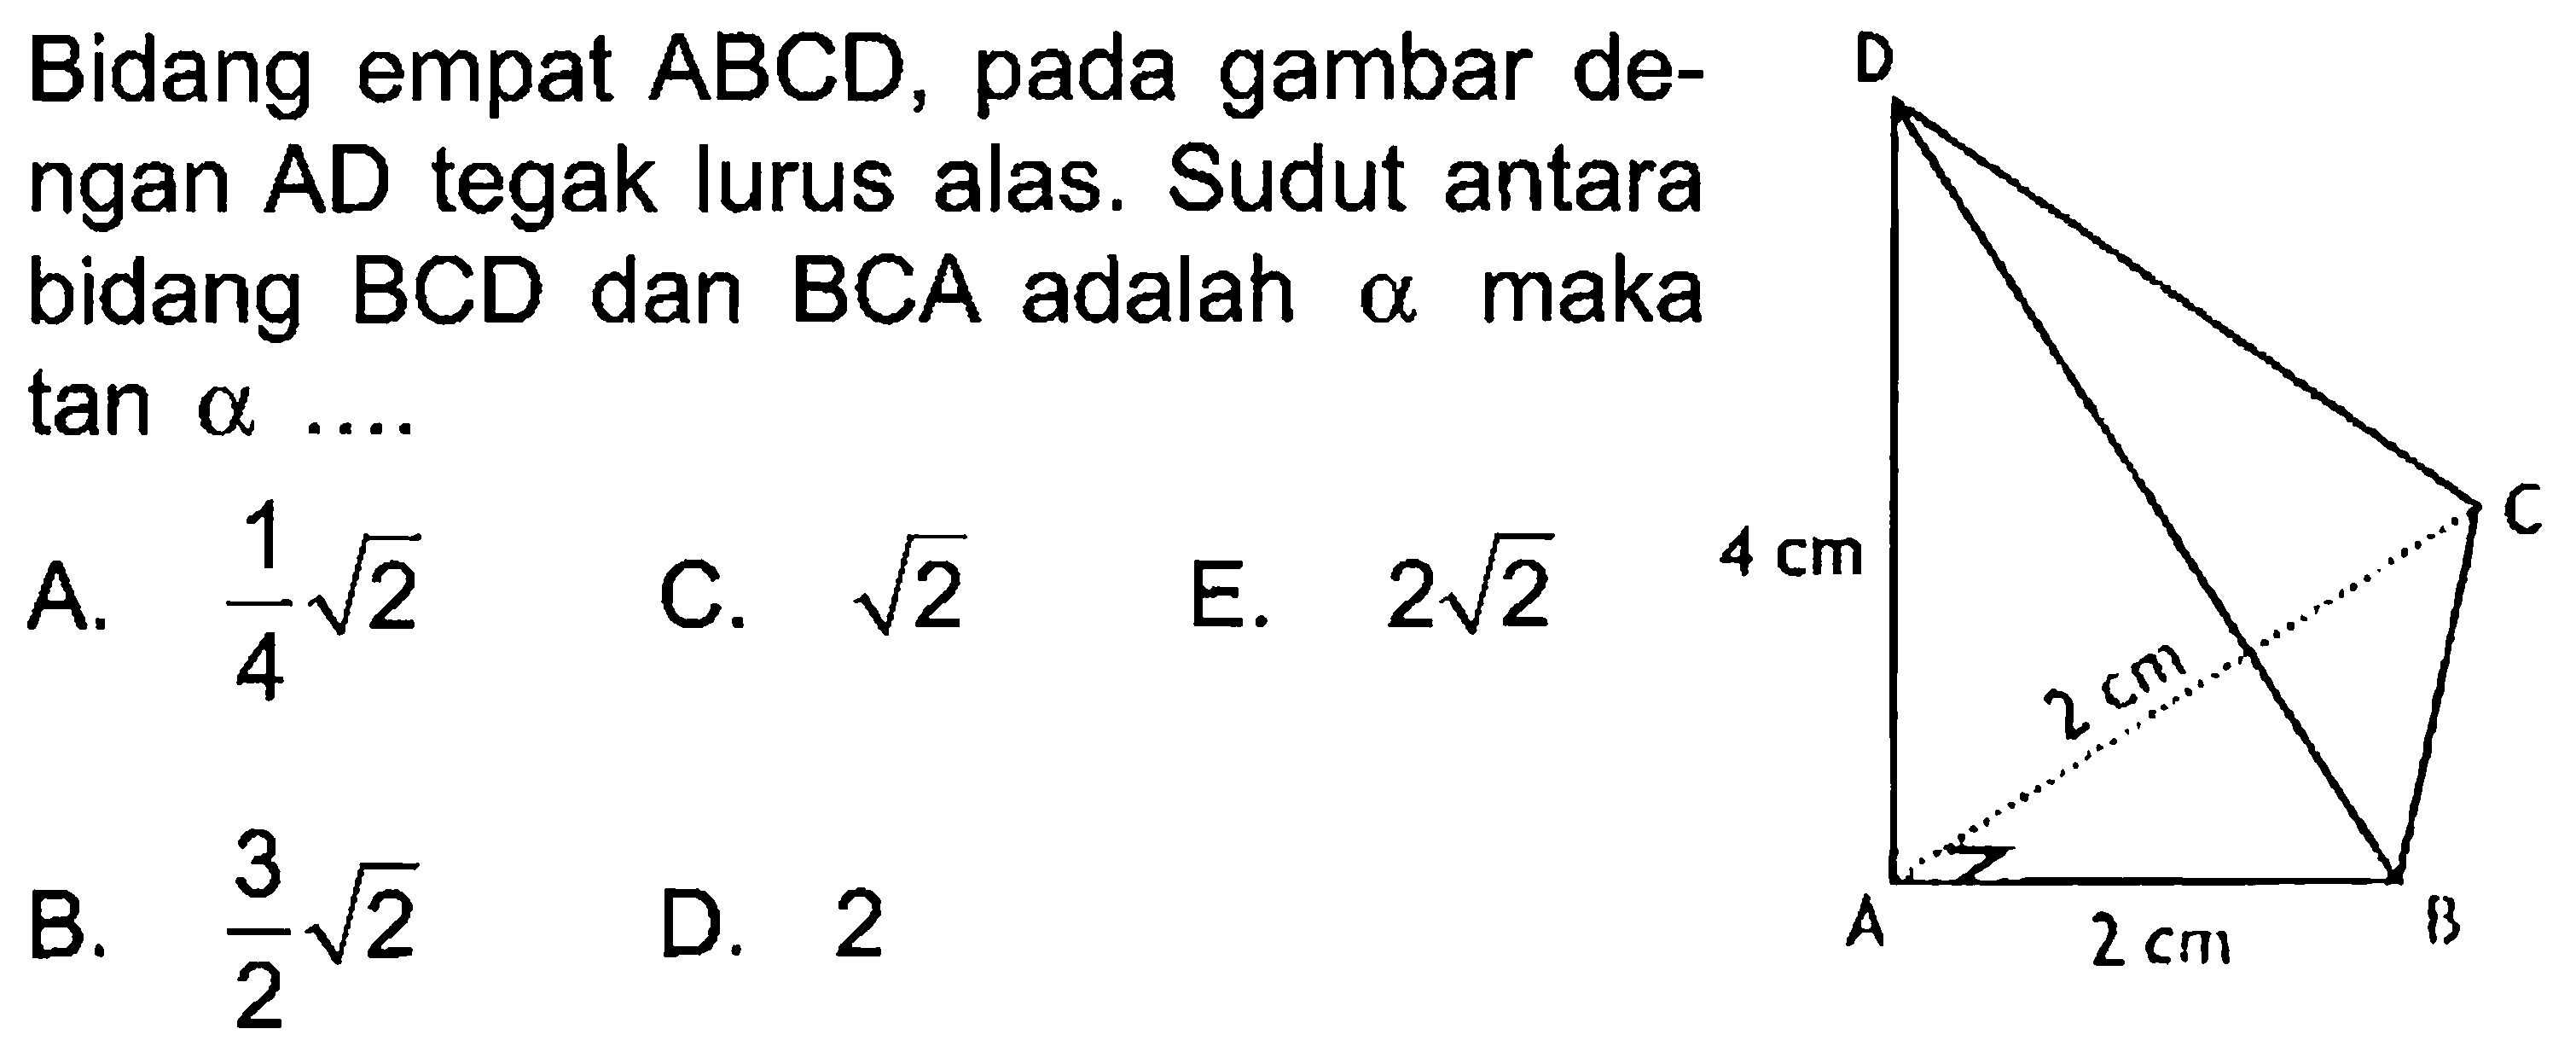 Bidang empat ABCD, pada gambar de- ngan AD tegak lurus alas. Sudut antara bidang BCD dan BCA adalah maka alpha tan alpha ...